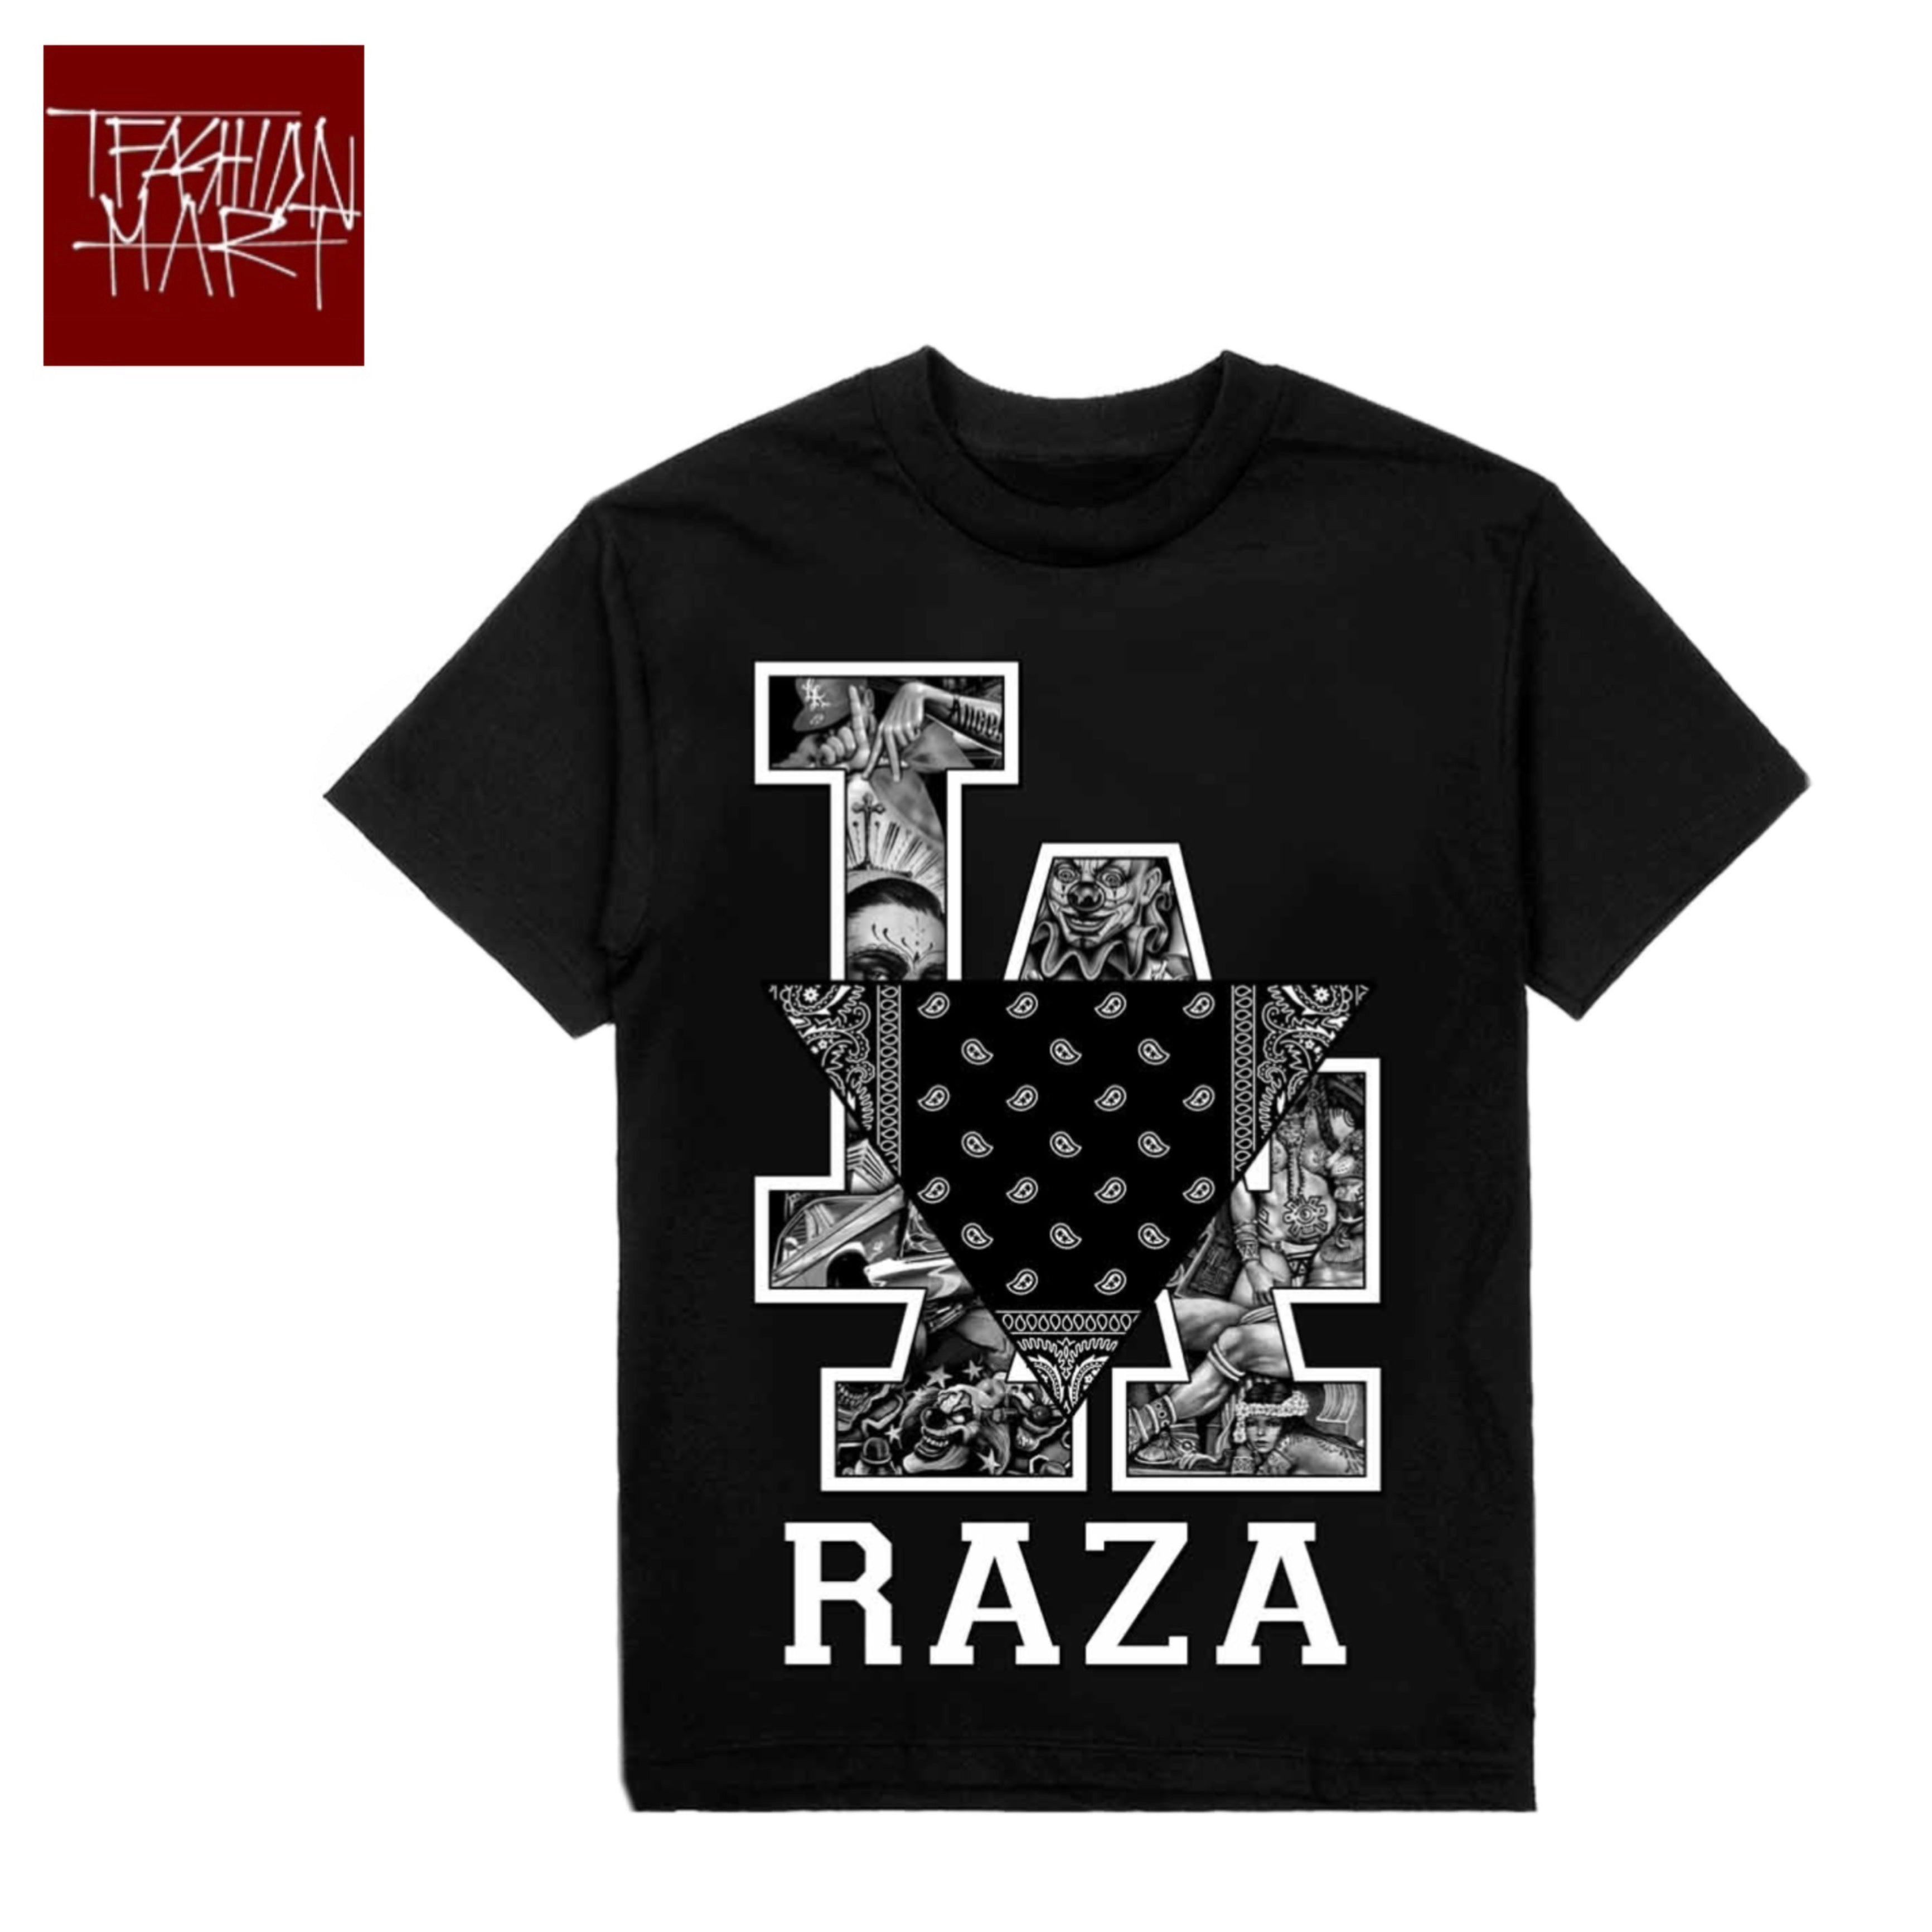 TFashion Graphic Tee - LA Raza